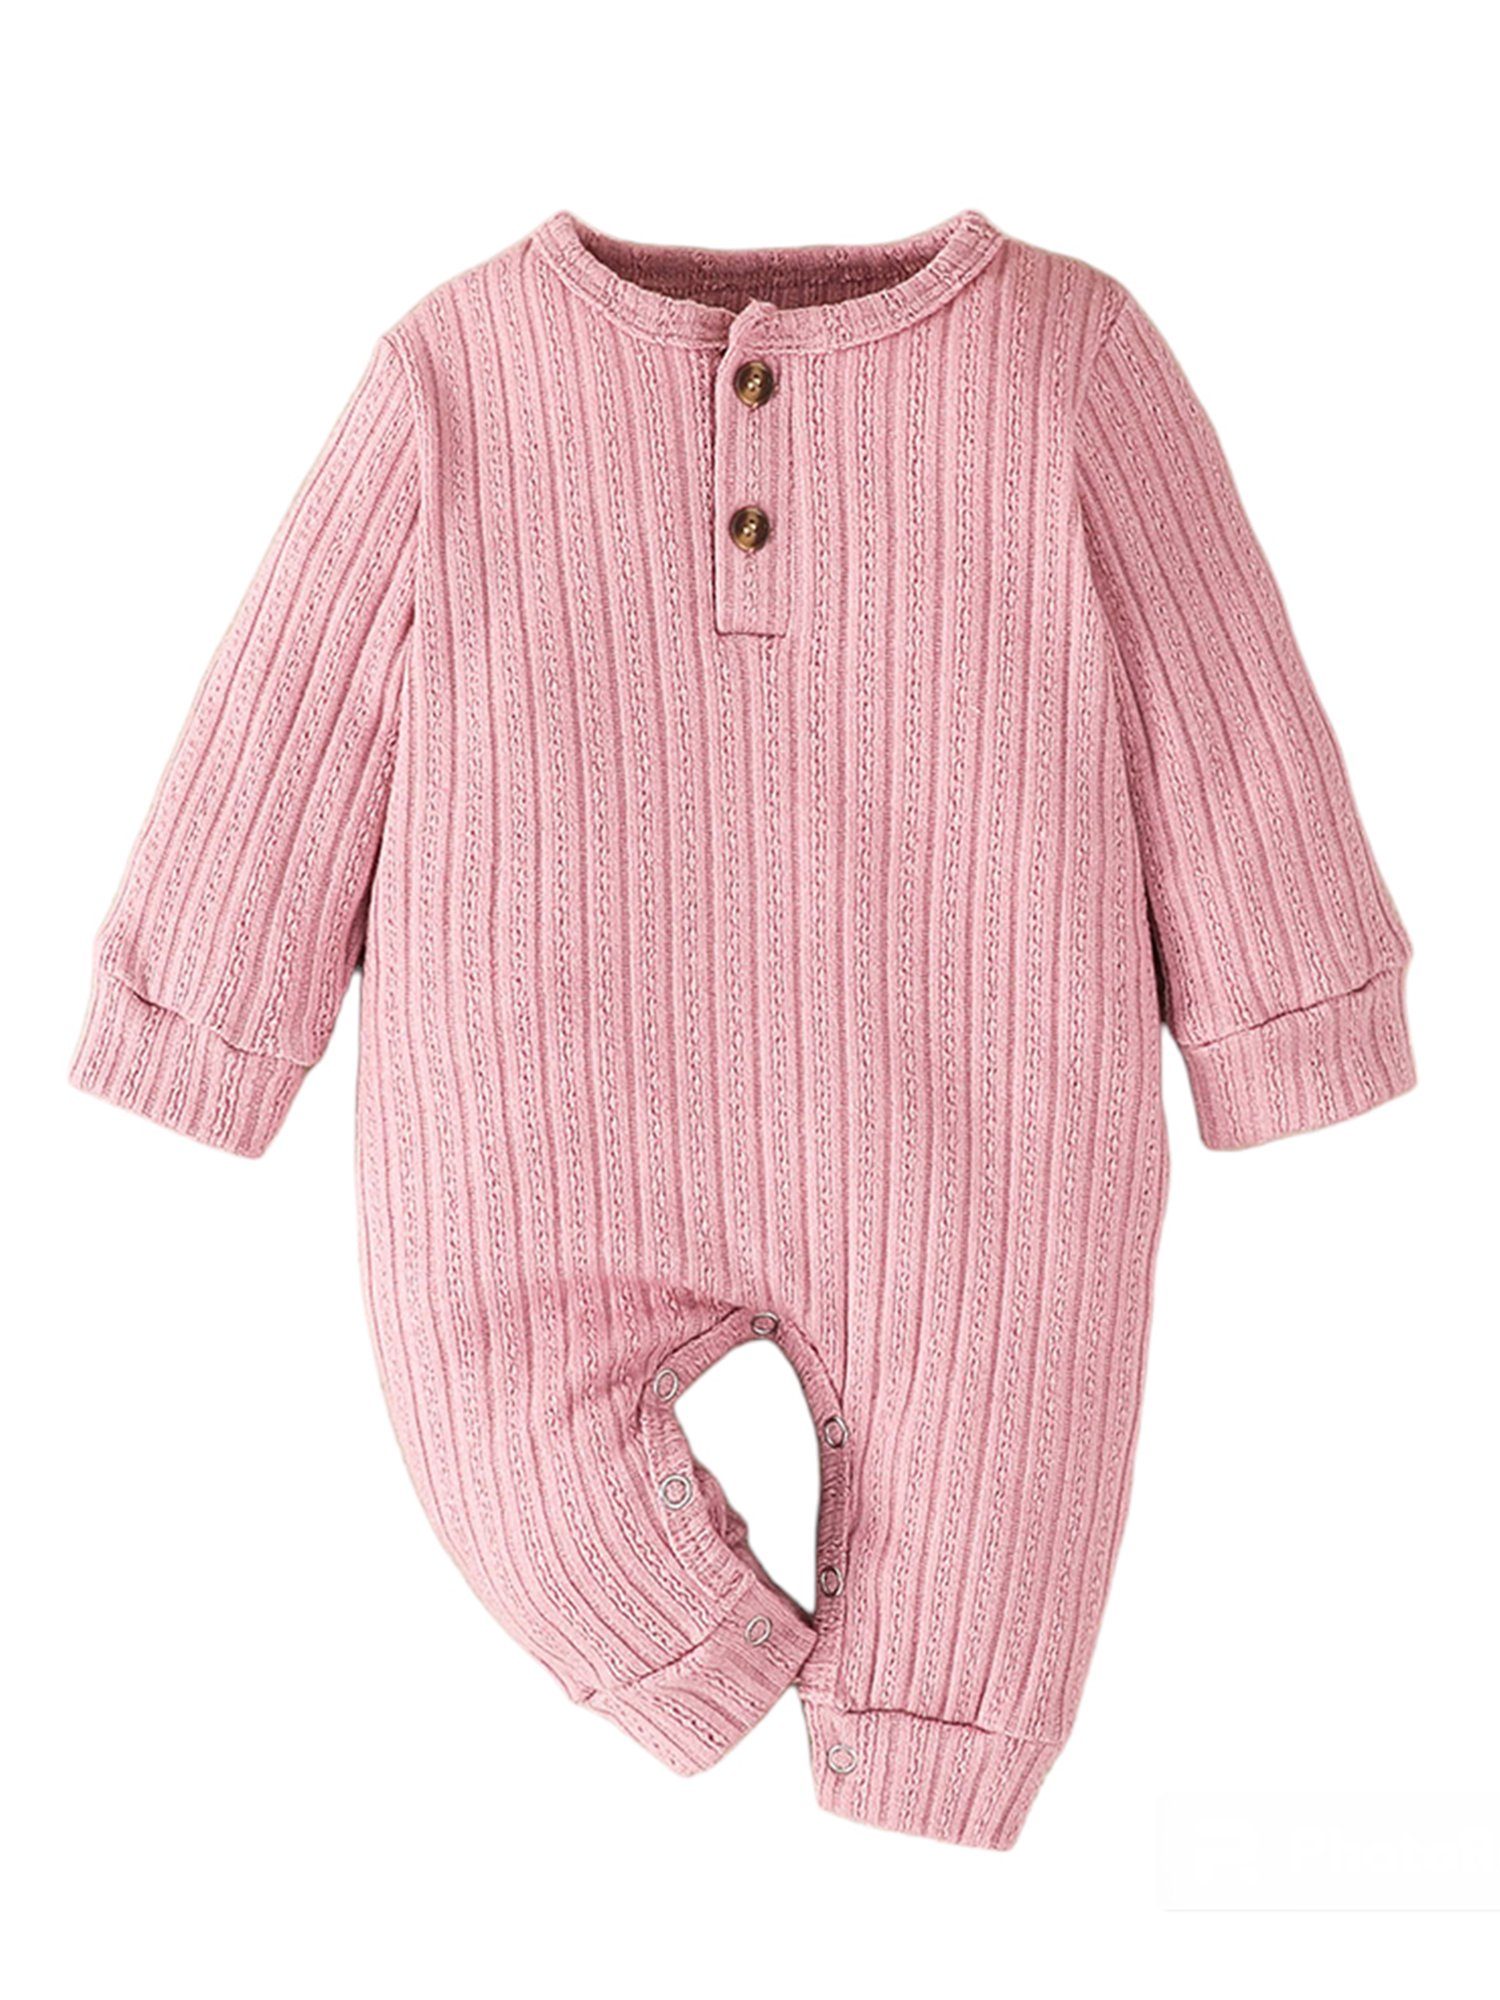 Lapastyle Strampler Einfarbiger langärmliger Strampler mit Knopfverschluss für Unisex Baby Jersey Anzug Rosa